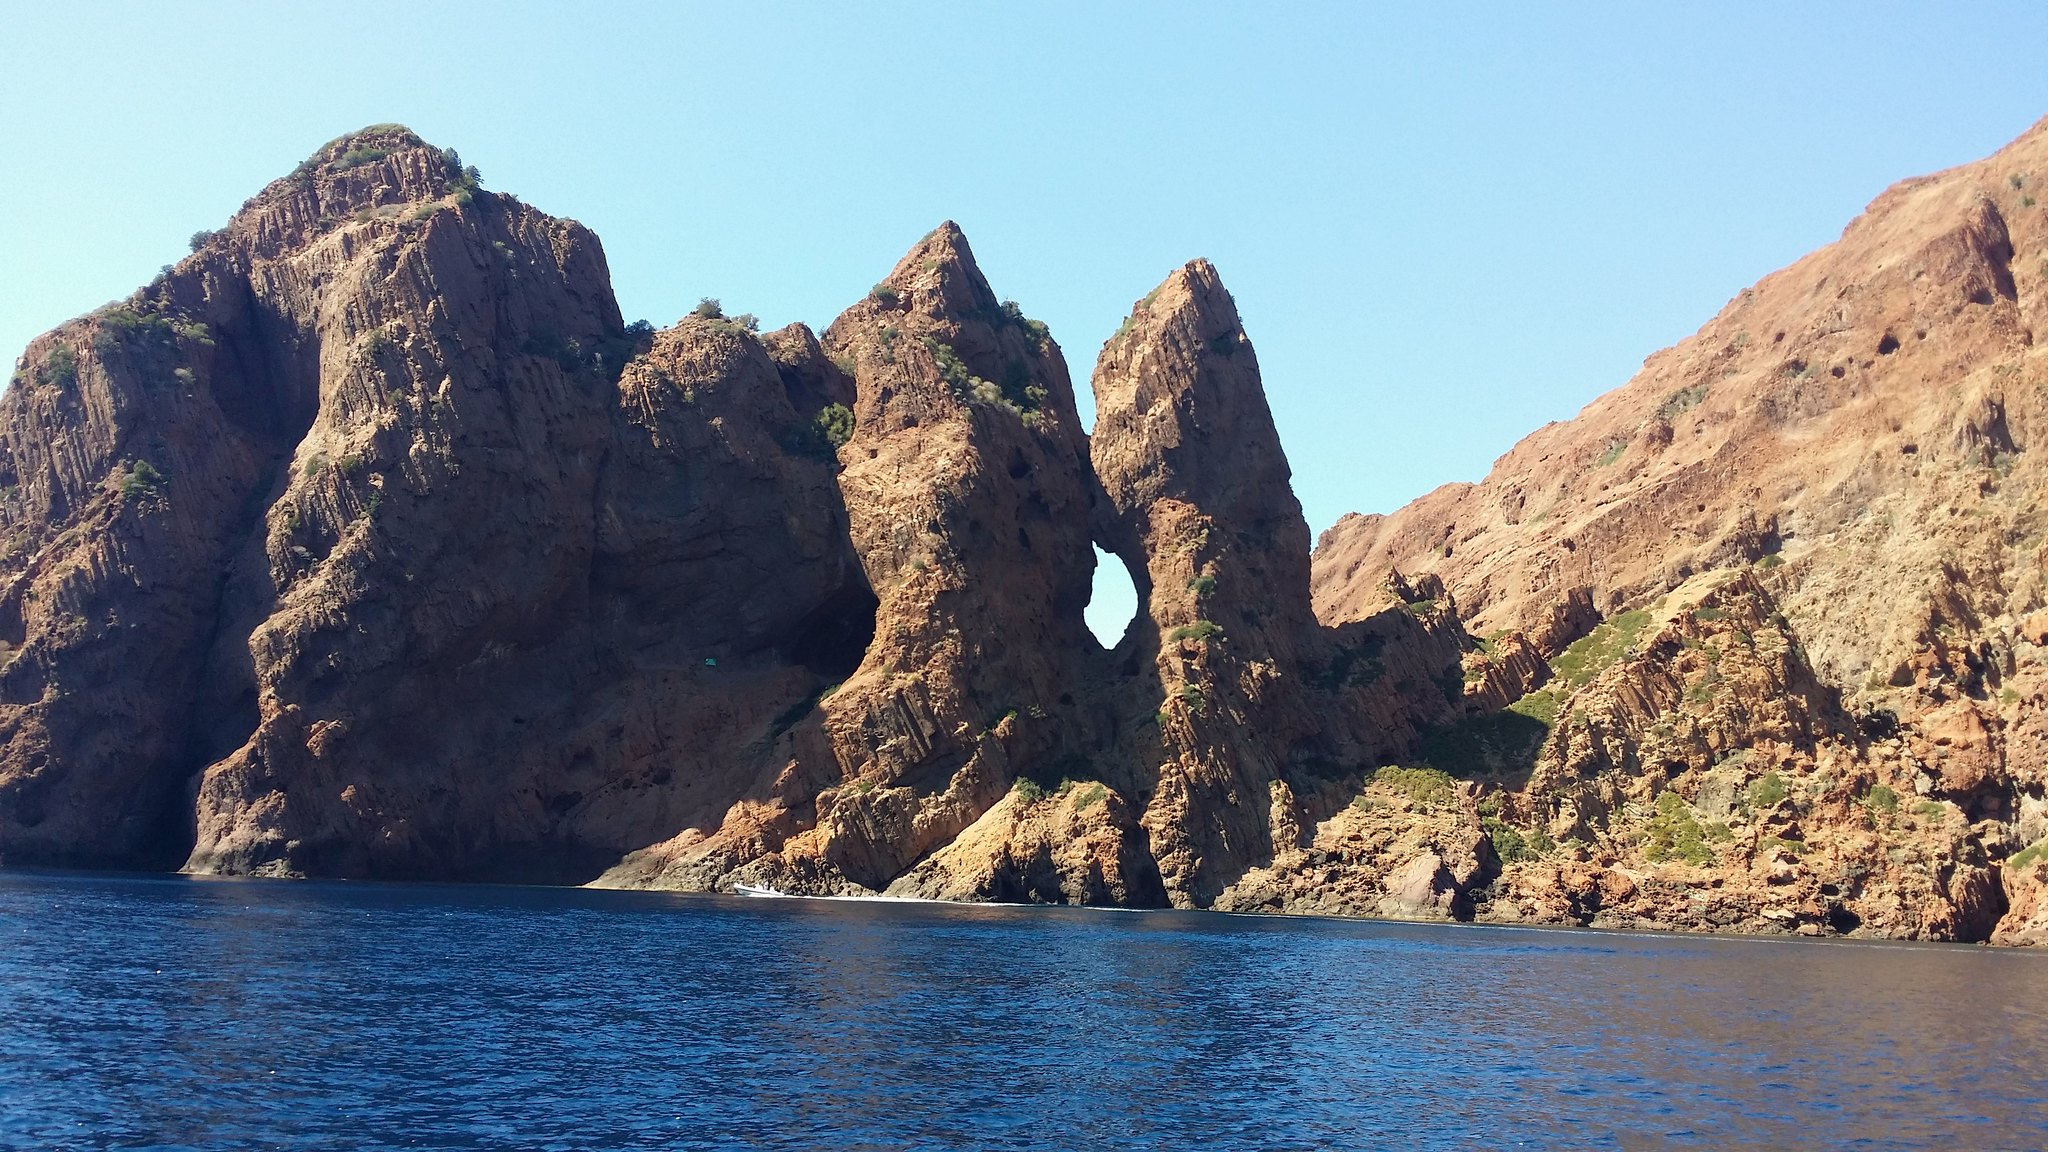 Paysage des calanques de Piana, avec ses rochers et la mer